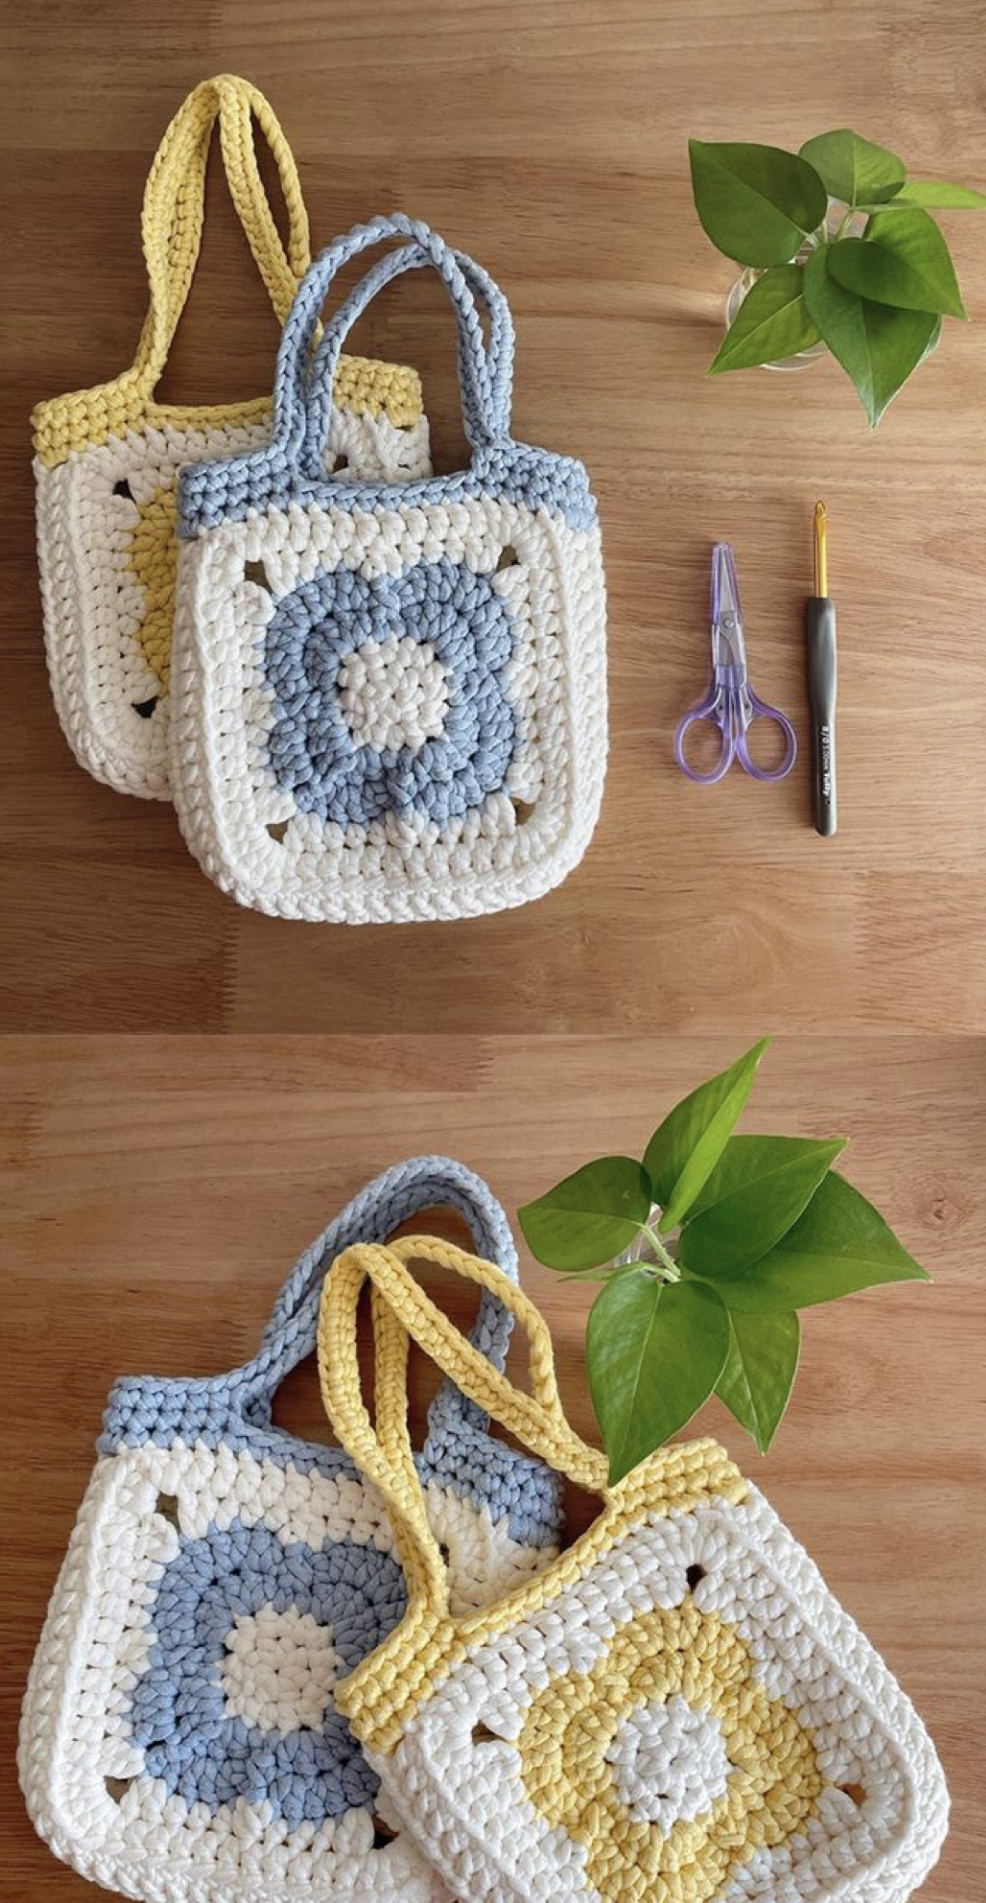 Free Crochet Pattern: Flower Motif Tote Bag – FREE CROCHET PATTERN ...